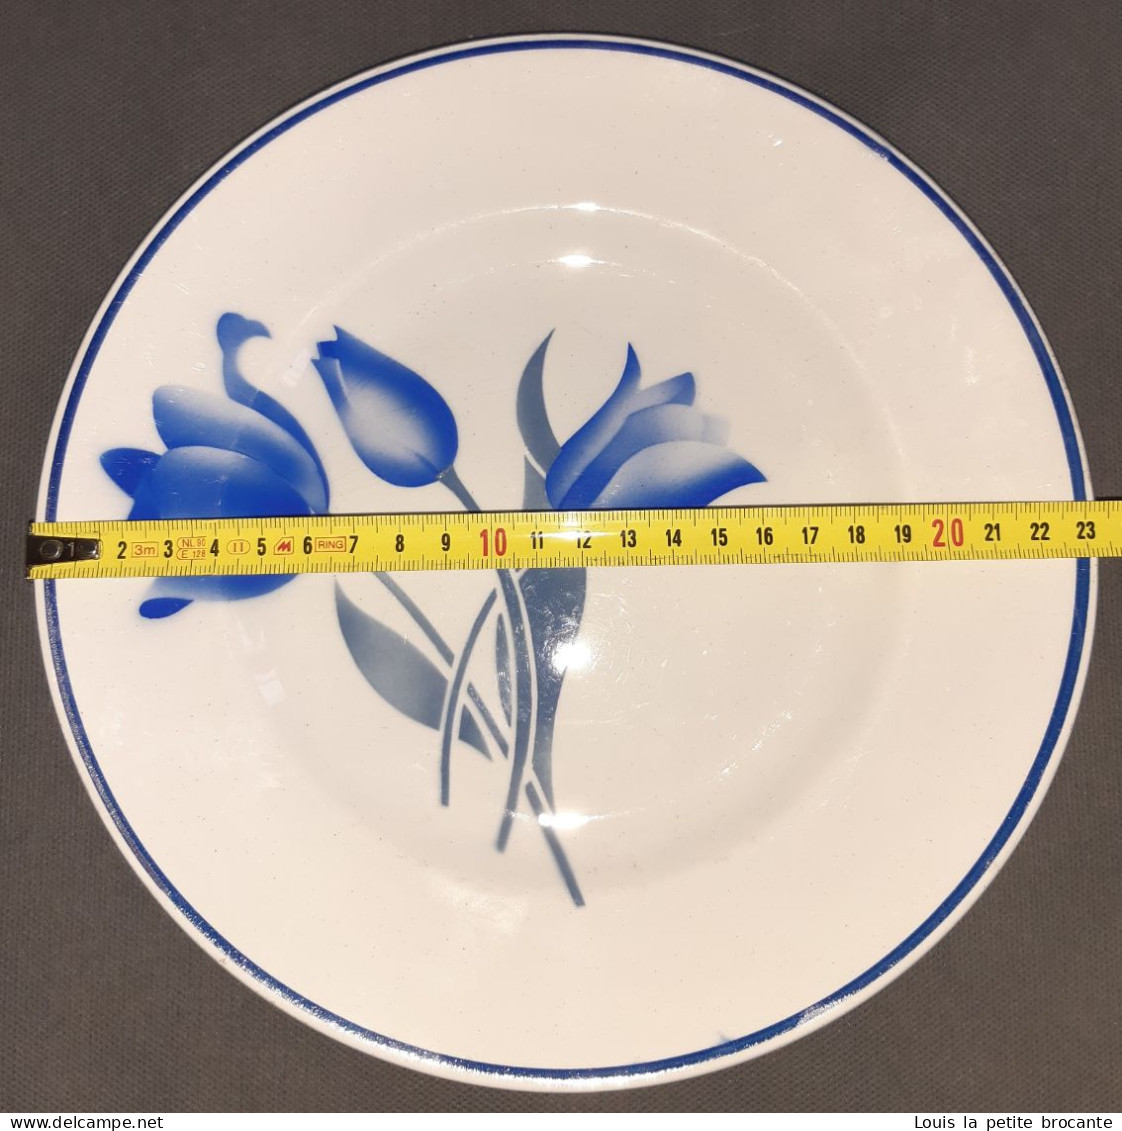 3 assiettes plates St AMAND ORCHIES, modèle SIMONE tulipes bleues. Très bon état. Diamètre 23cm